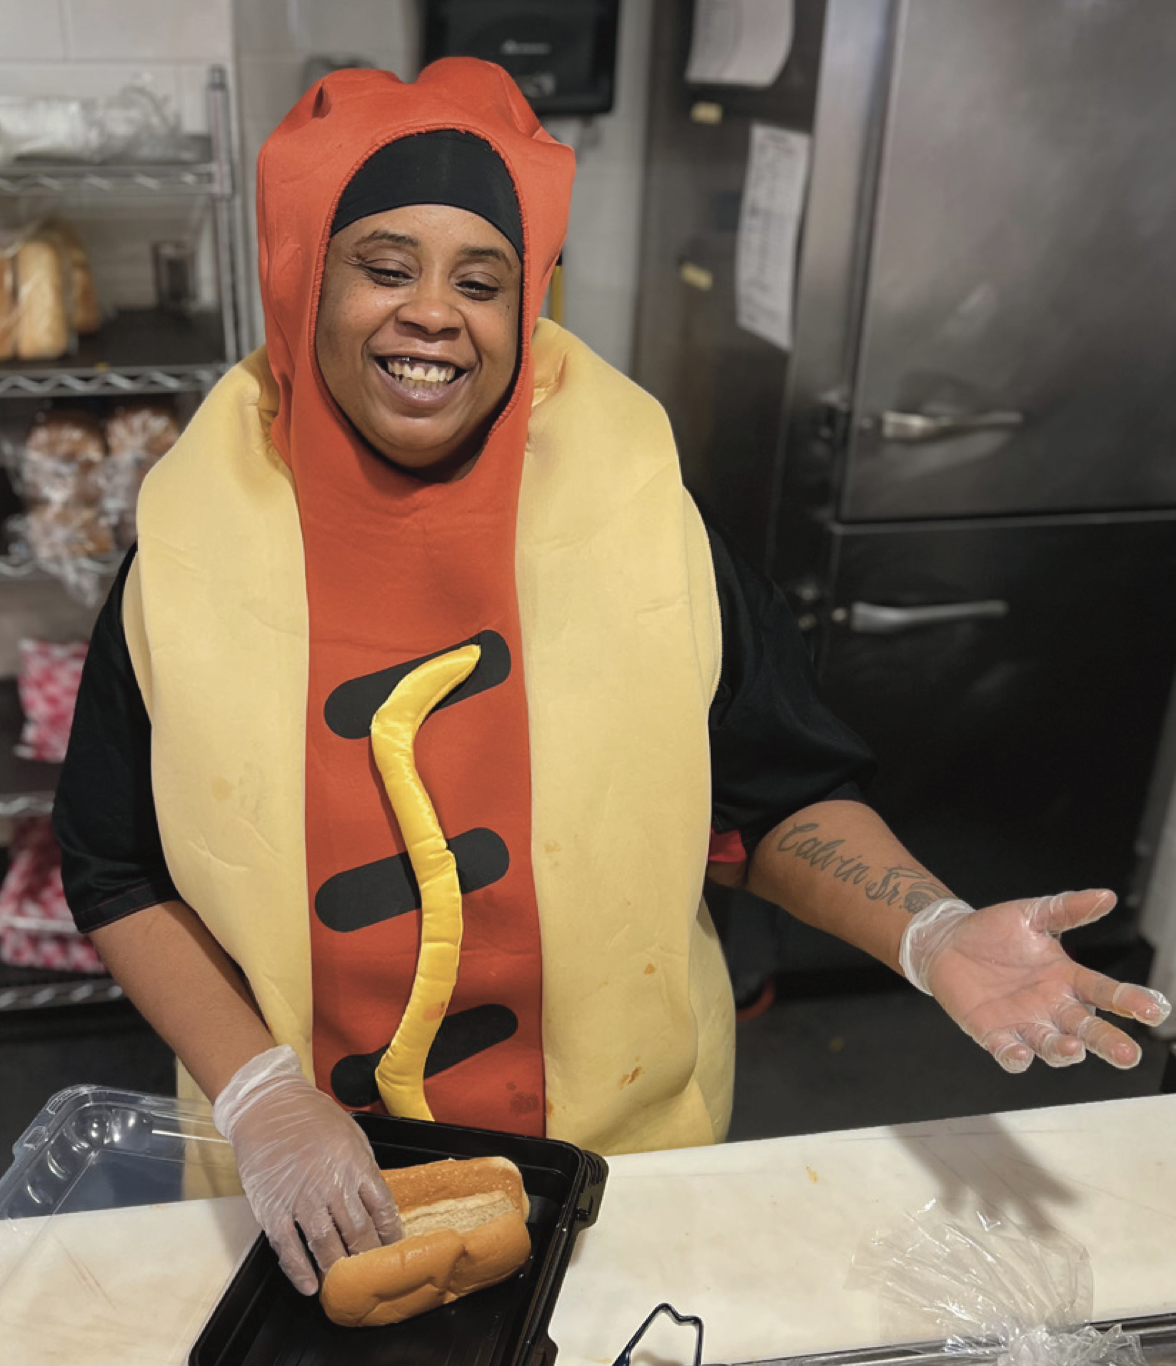 Ernie Clemons in a hotdog costume